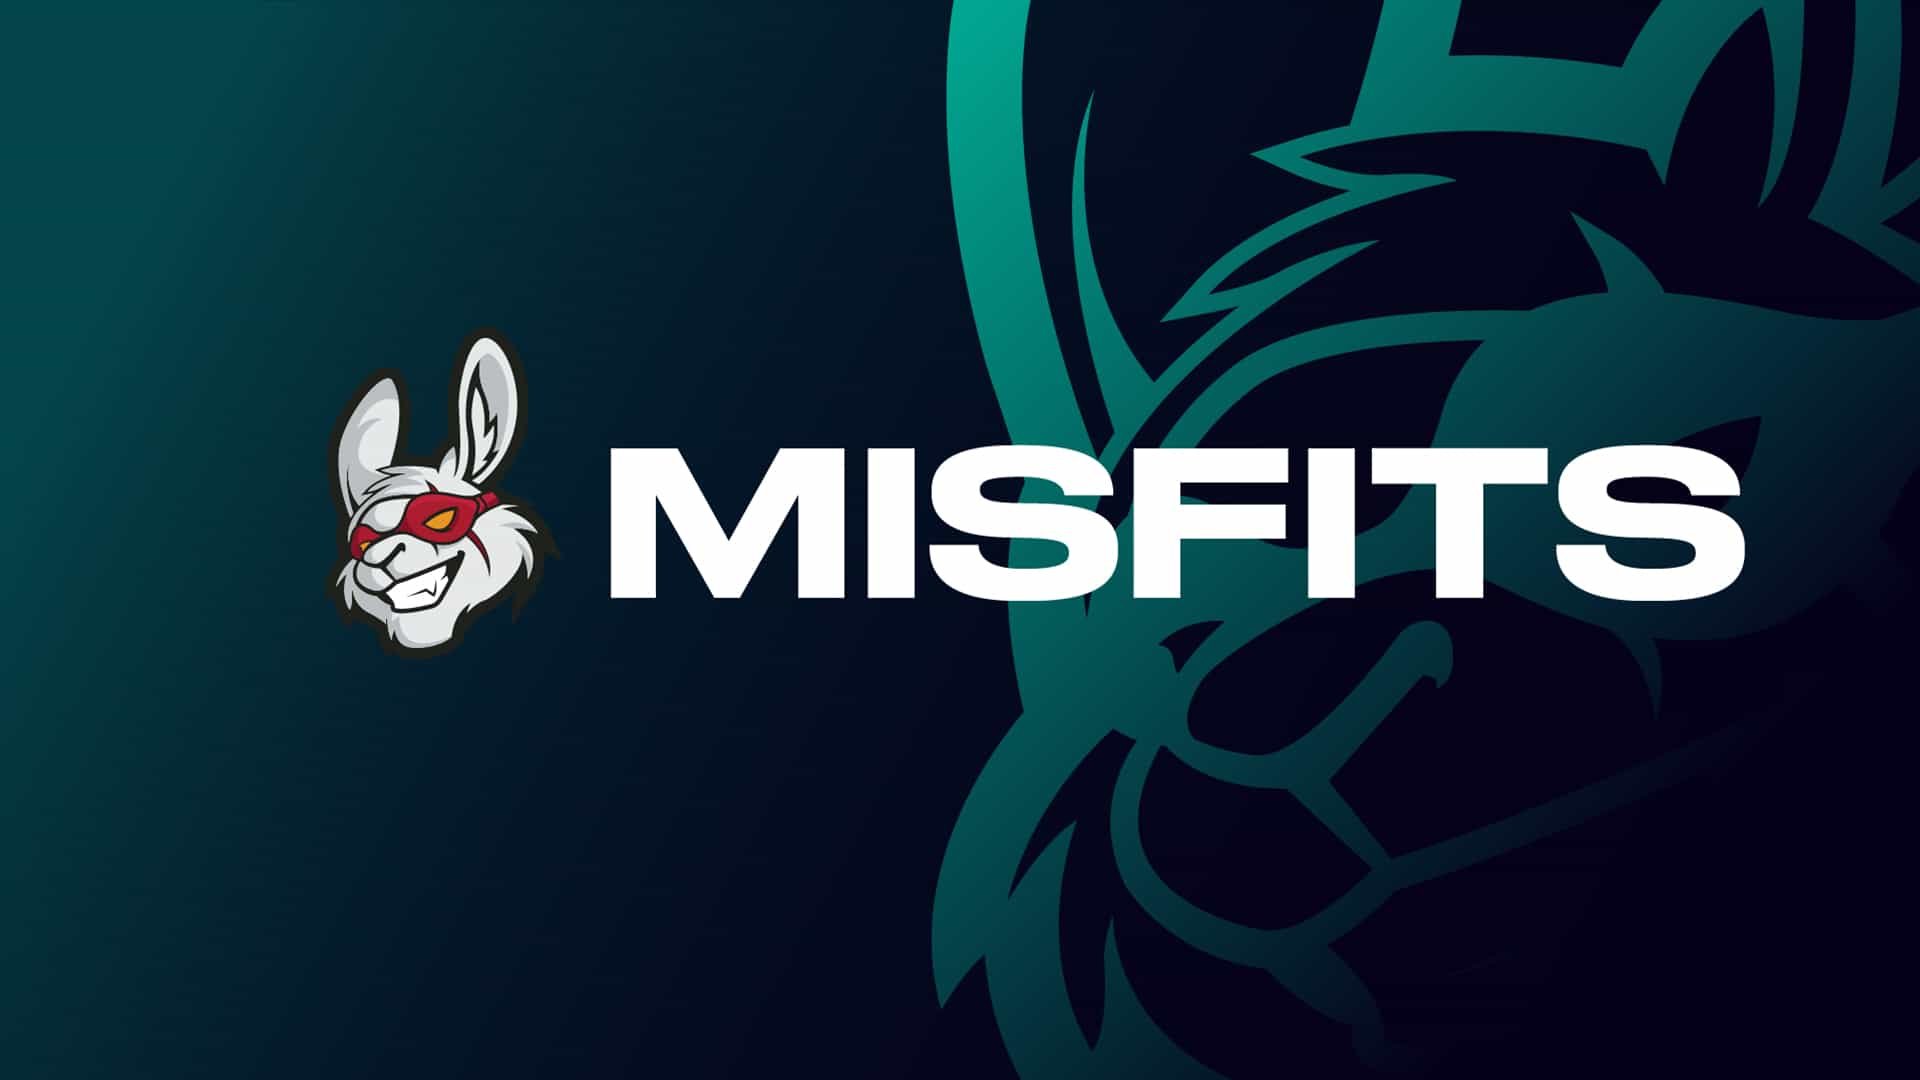 Imagem da logo da Misfits